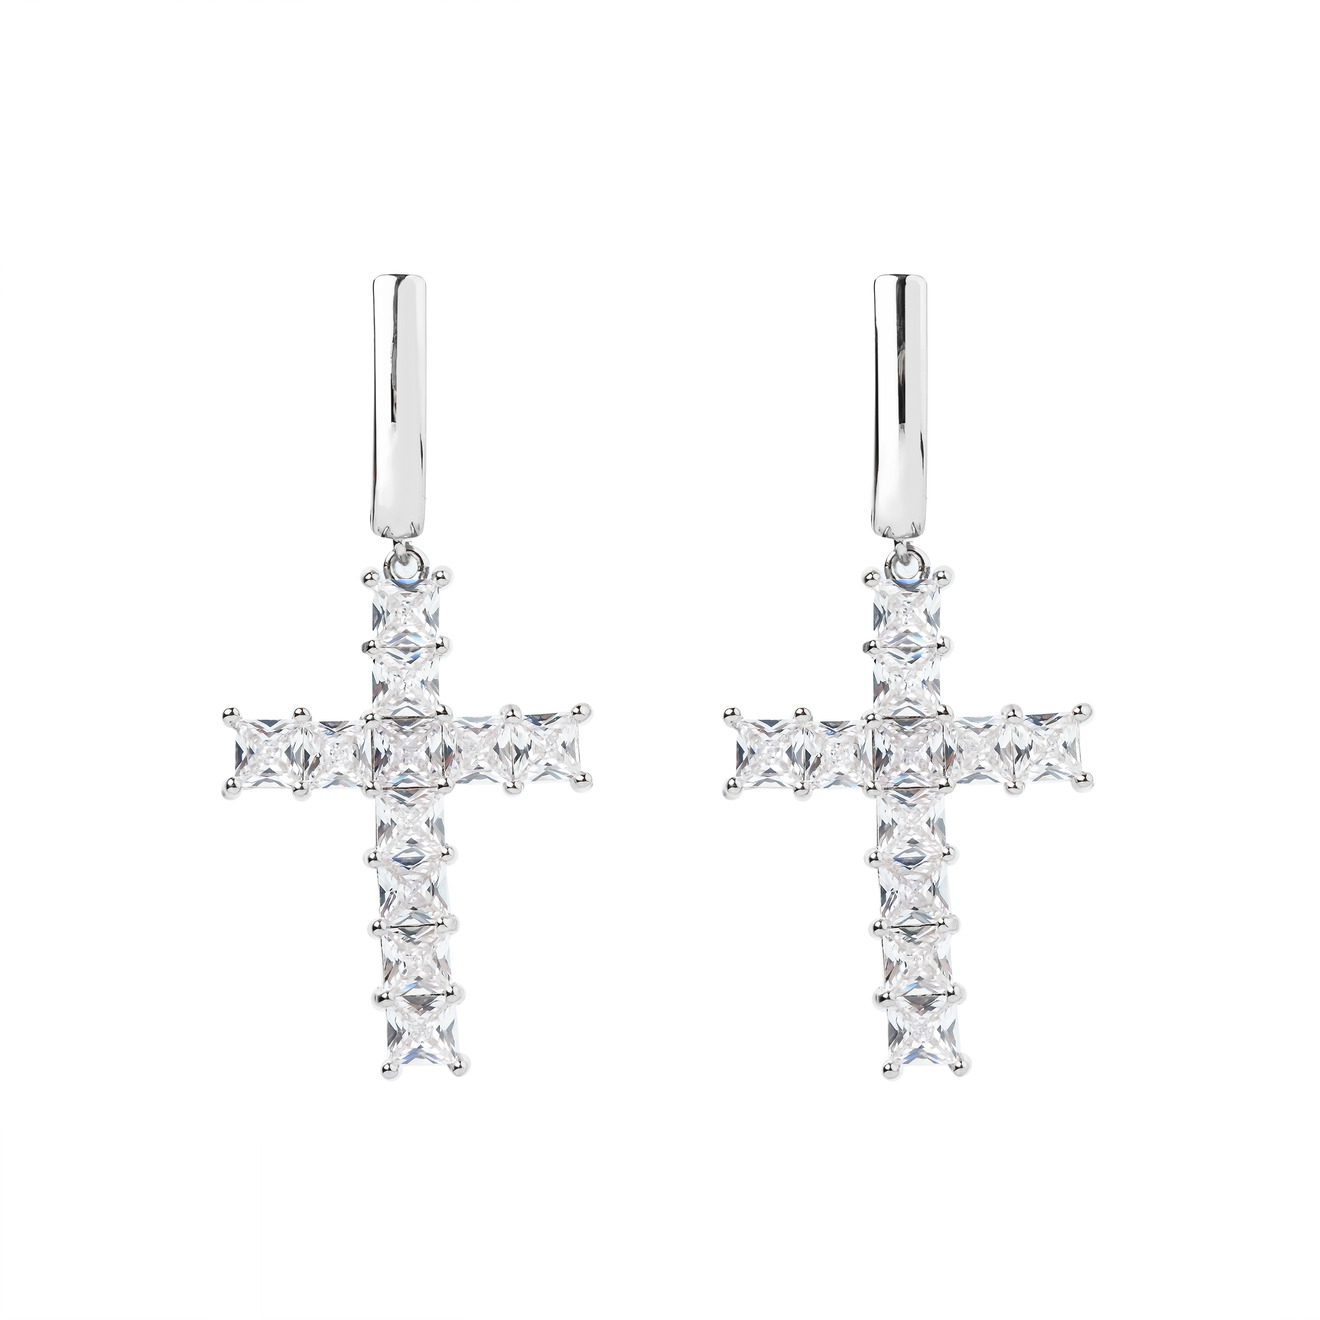 Herald Percy Серебристые серьги-кресты с кристаллами цена и фото